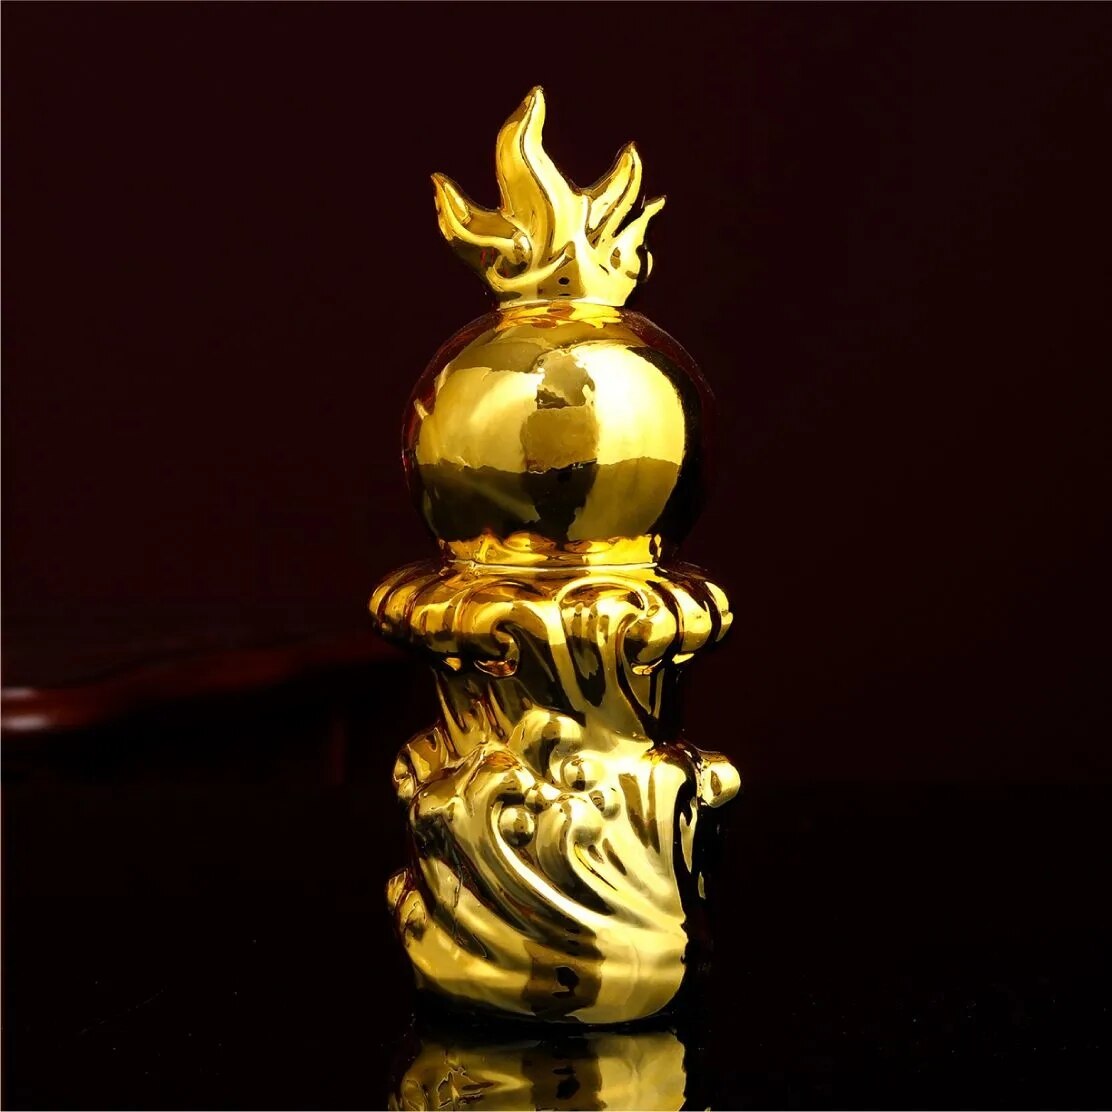 30 cm goed geluk Golden Dragon Chinese Zodiac Twaalf standbeeld Gold Dragon Statue Dieren Sculptuur Figurines Desktop Decoratie